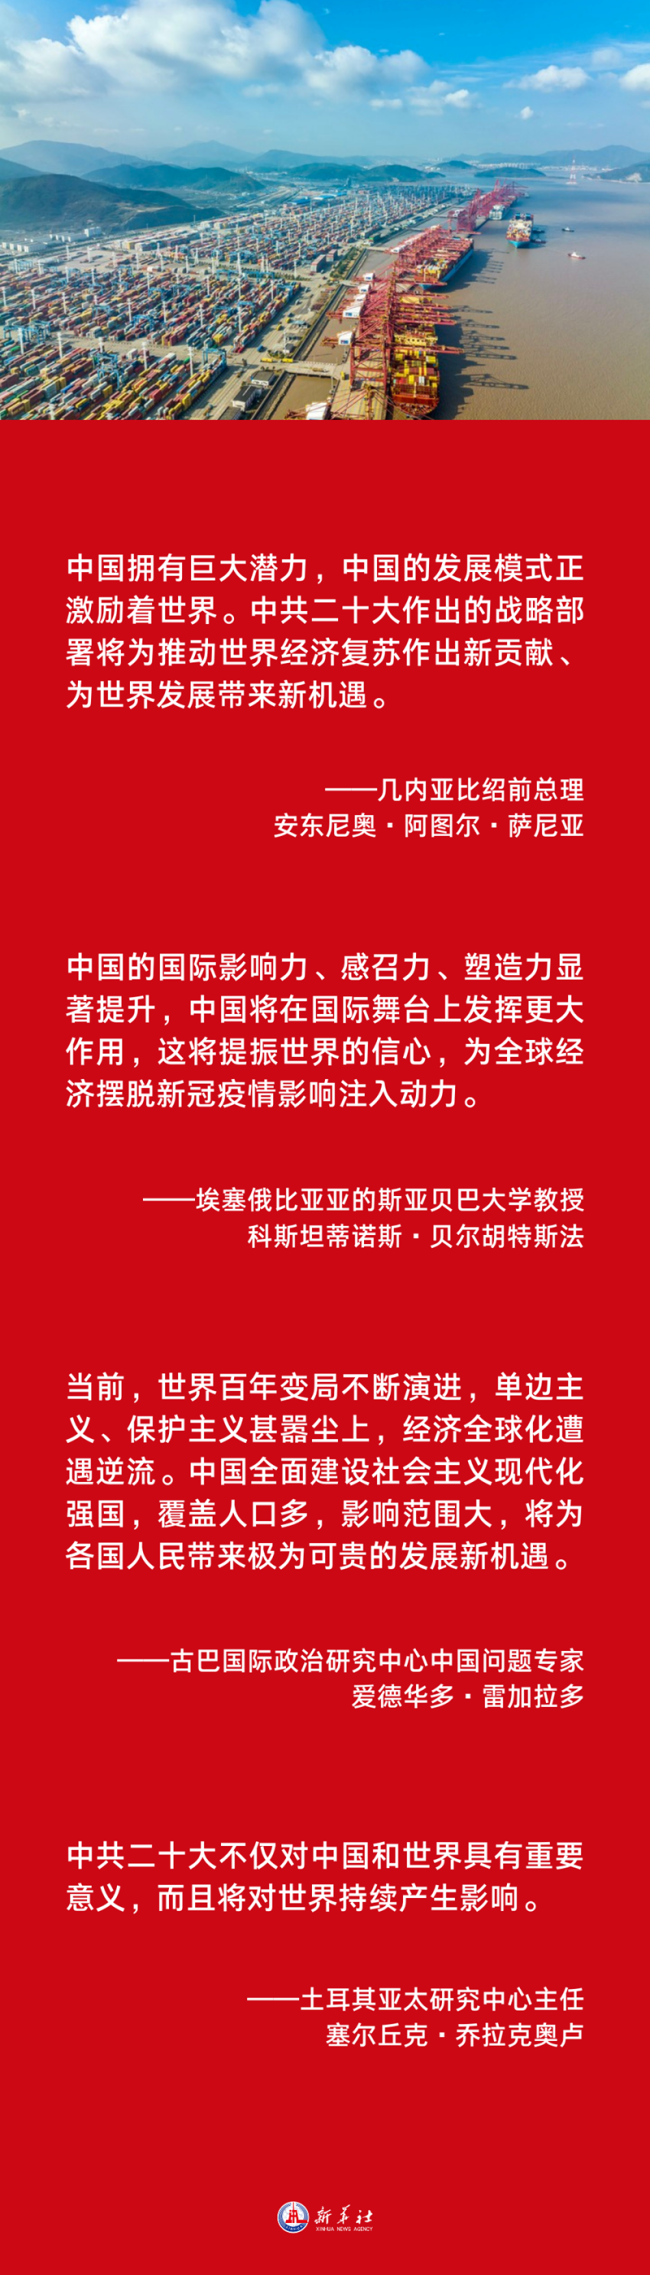 海报 | 中共二十大对中国和世界都具有里程碑意义